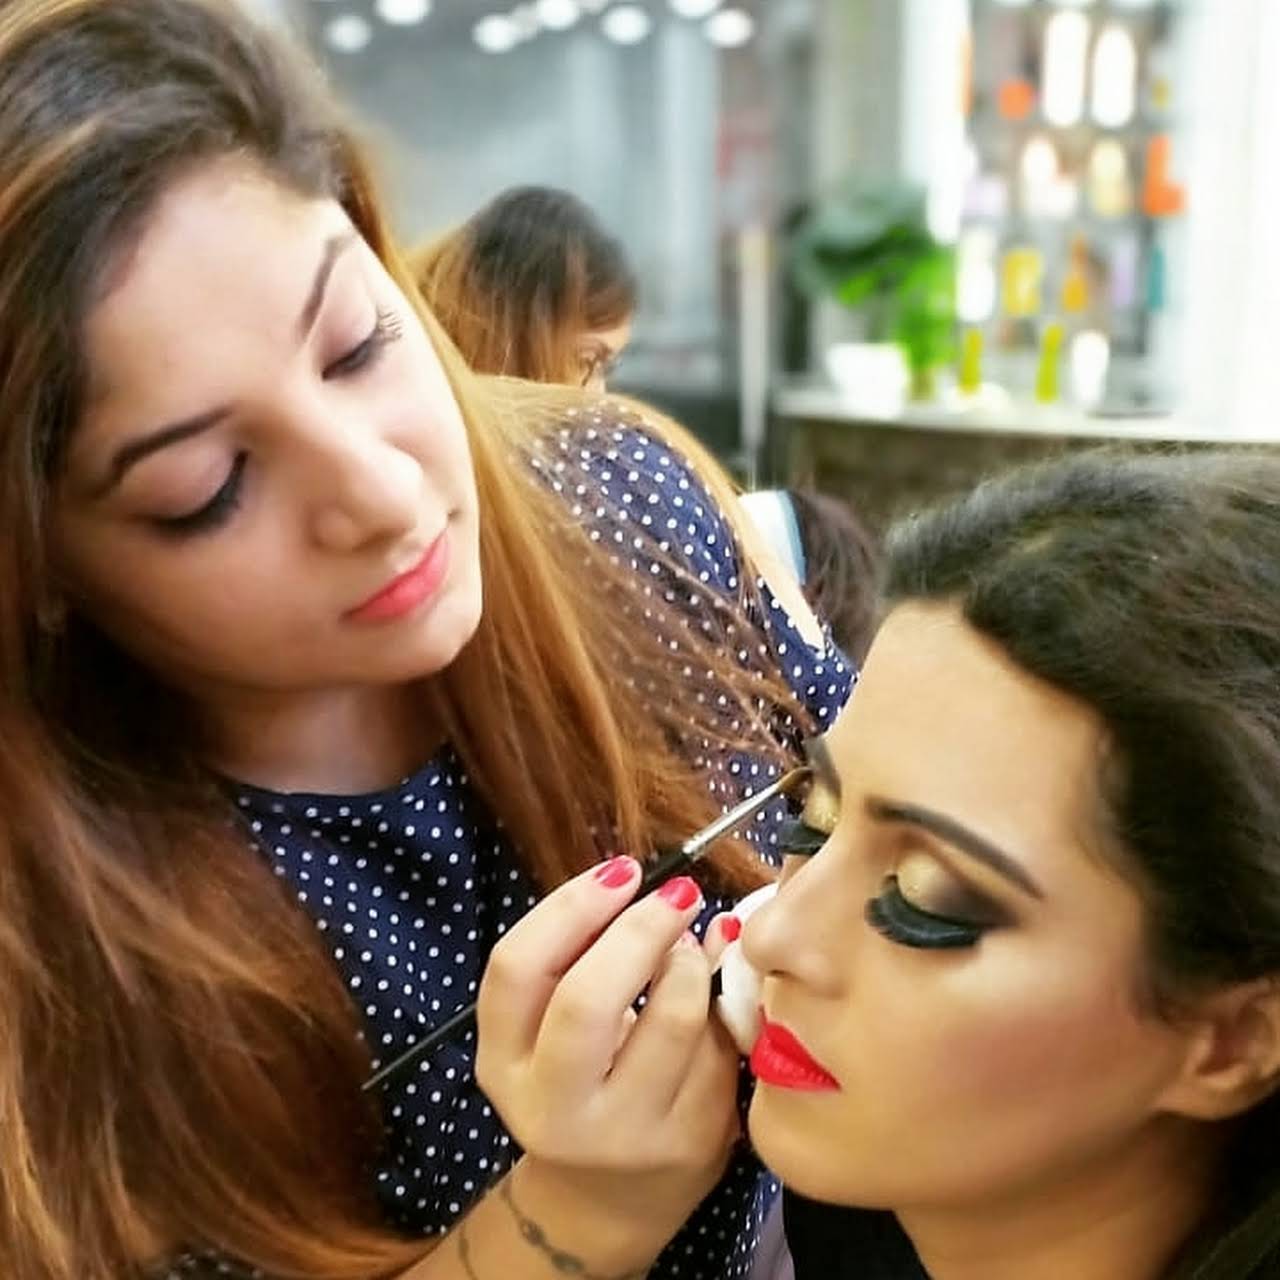 Anu makeovers (beauty salon & makeup studio) Active Life | Salon